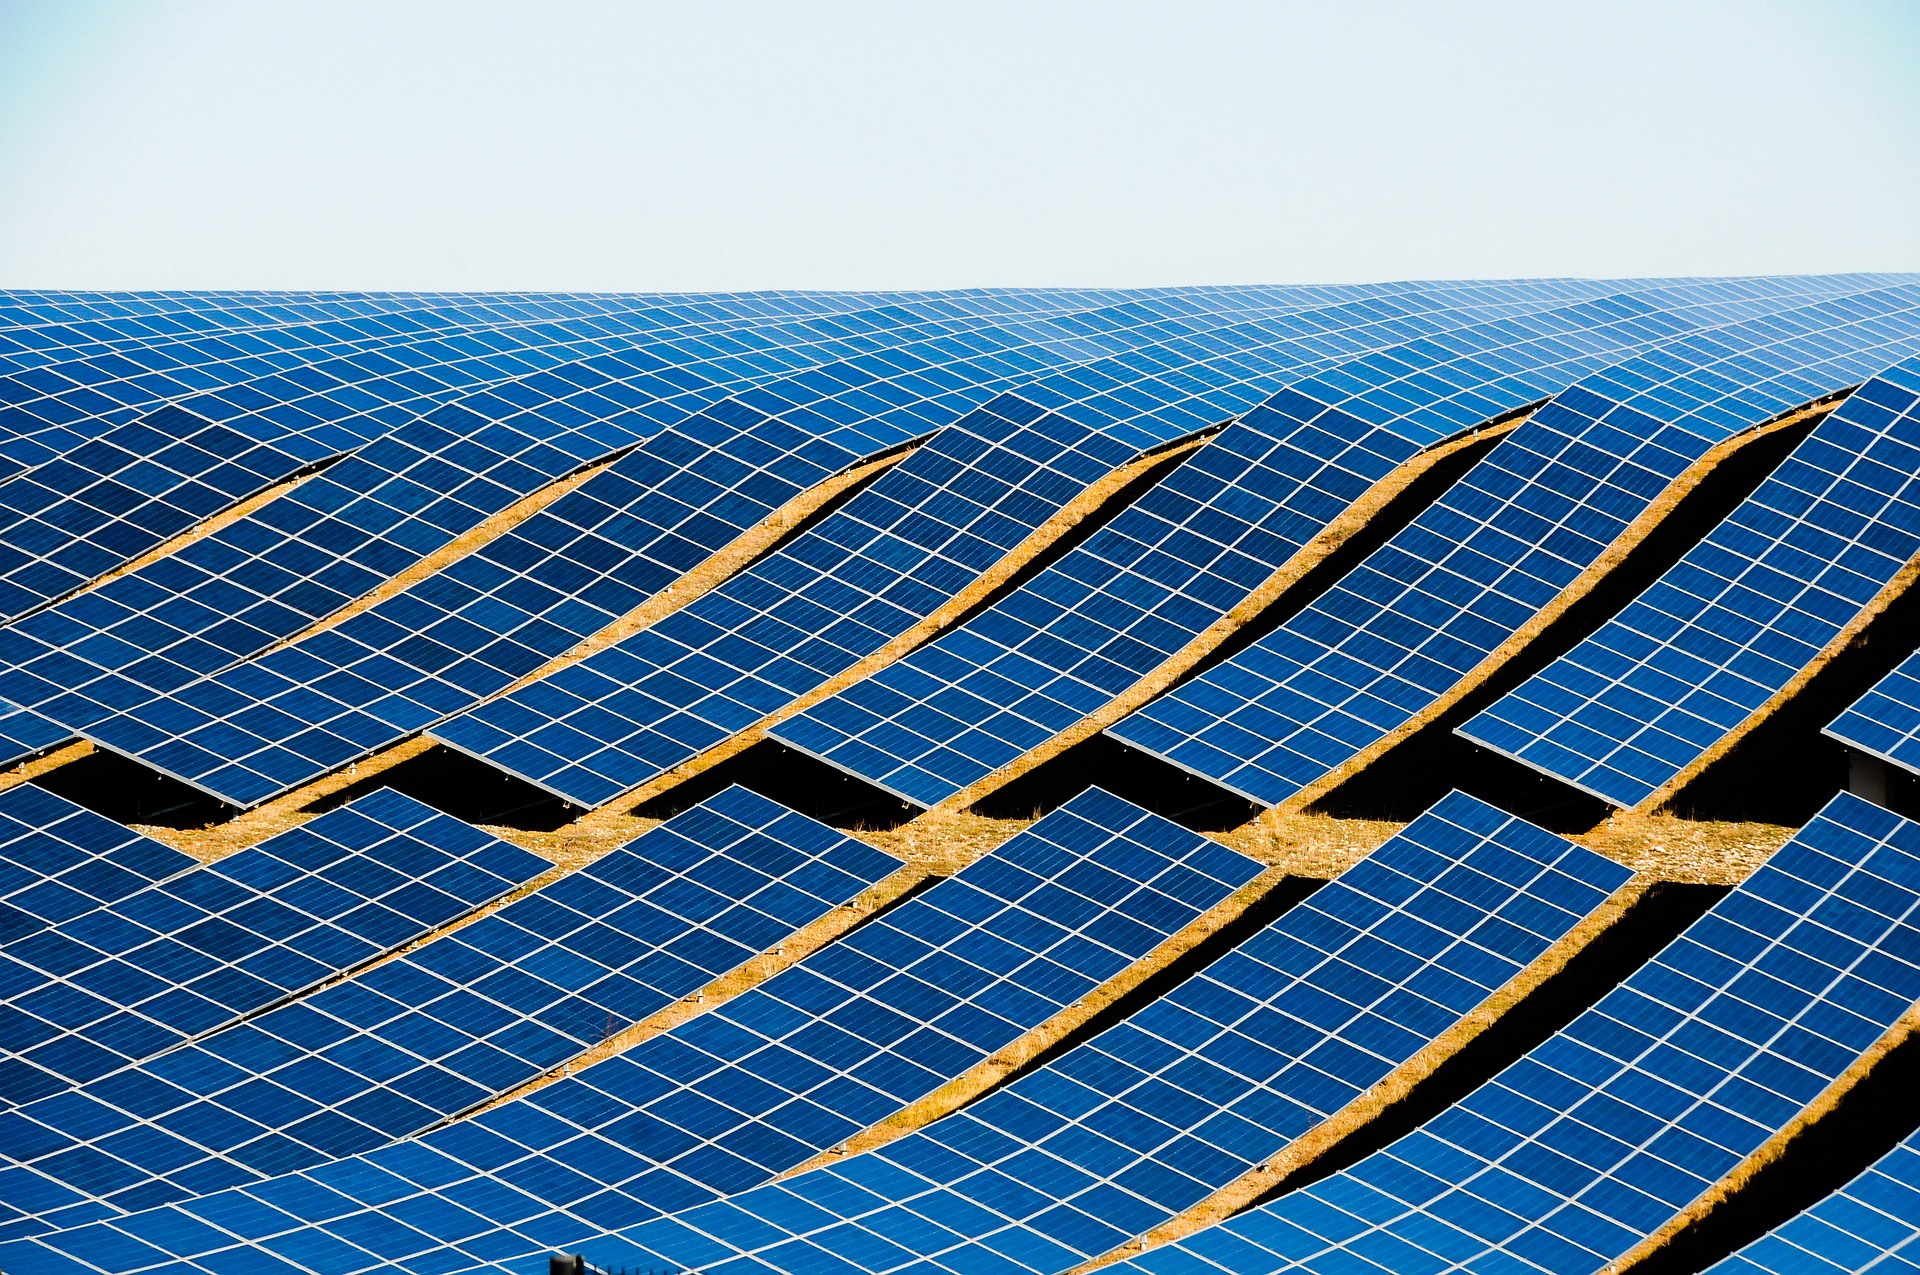 Verwaltungsvorschrift des Ministeriums für Umwelt, Klima und Energiewirtschaft Baden-Württemberg über die Förderung netzdienlicher Photovoltaik-Batteriespeicher